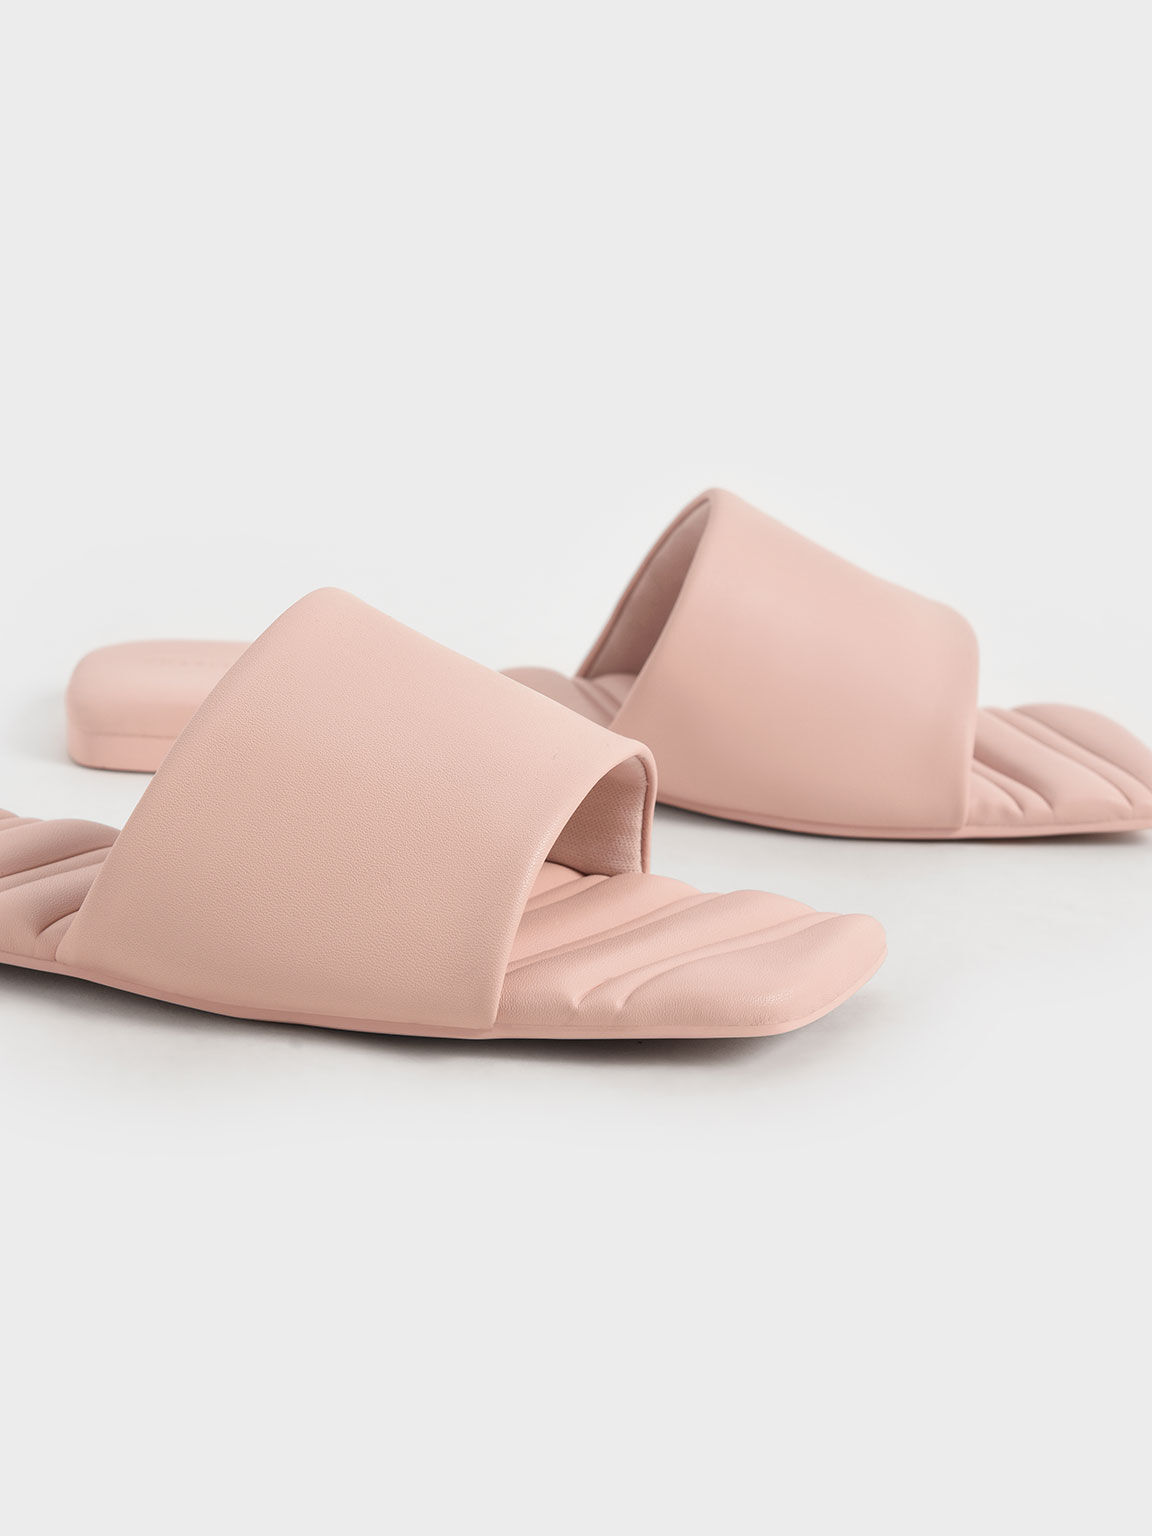 Square Toe Padded Slide Sandals, Light Pink, hi-res